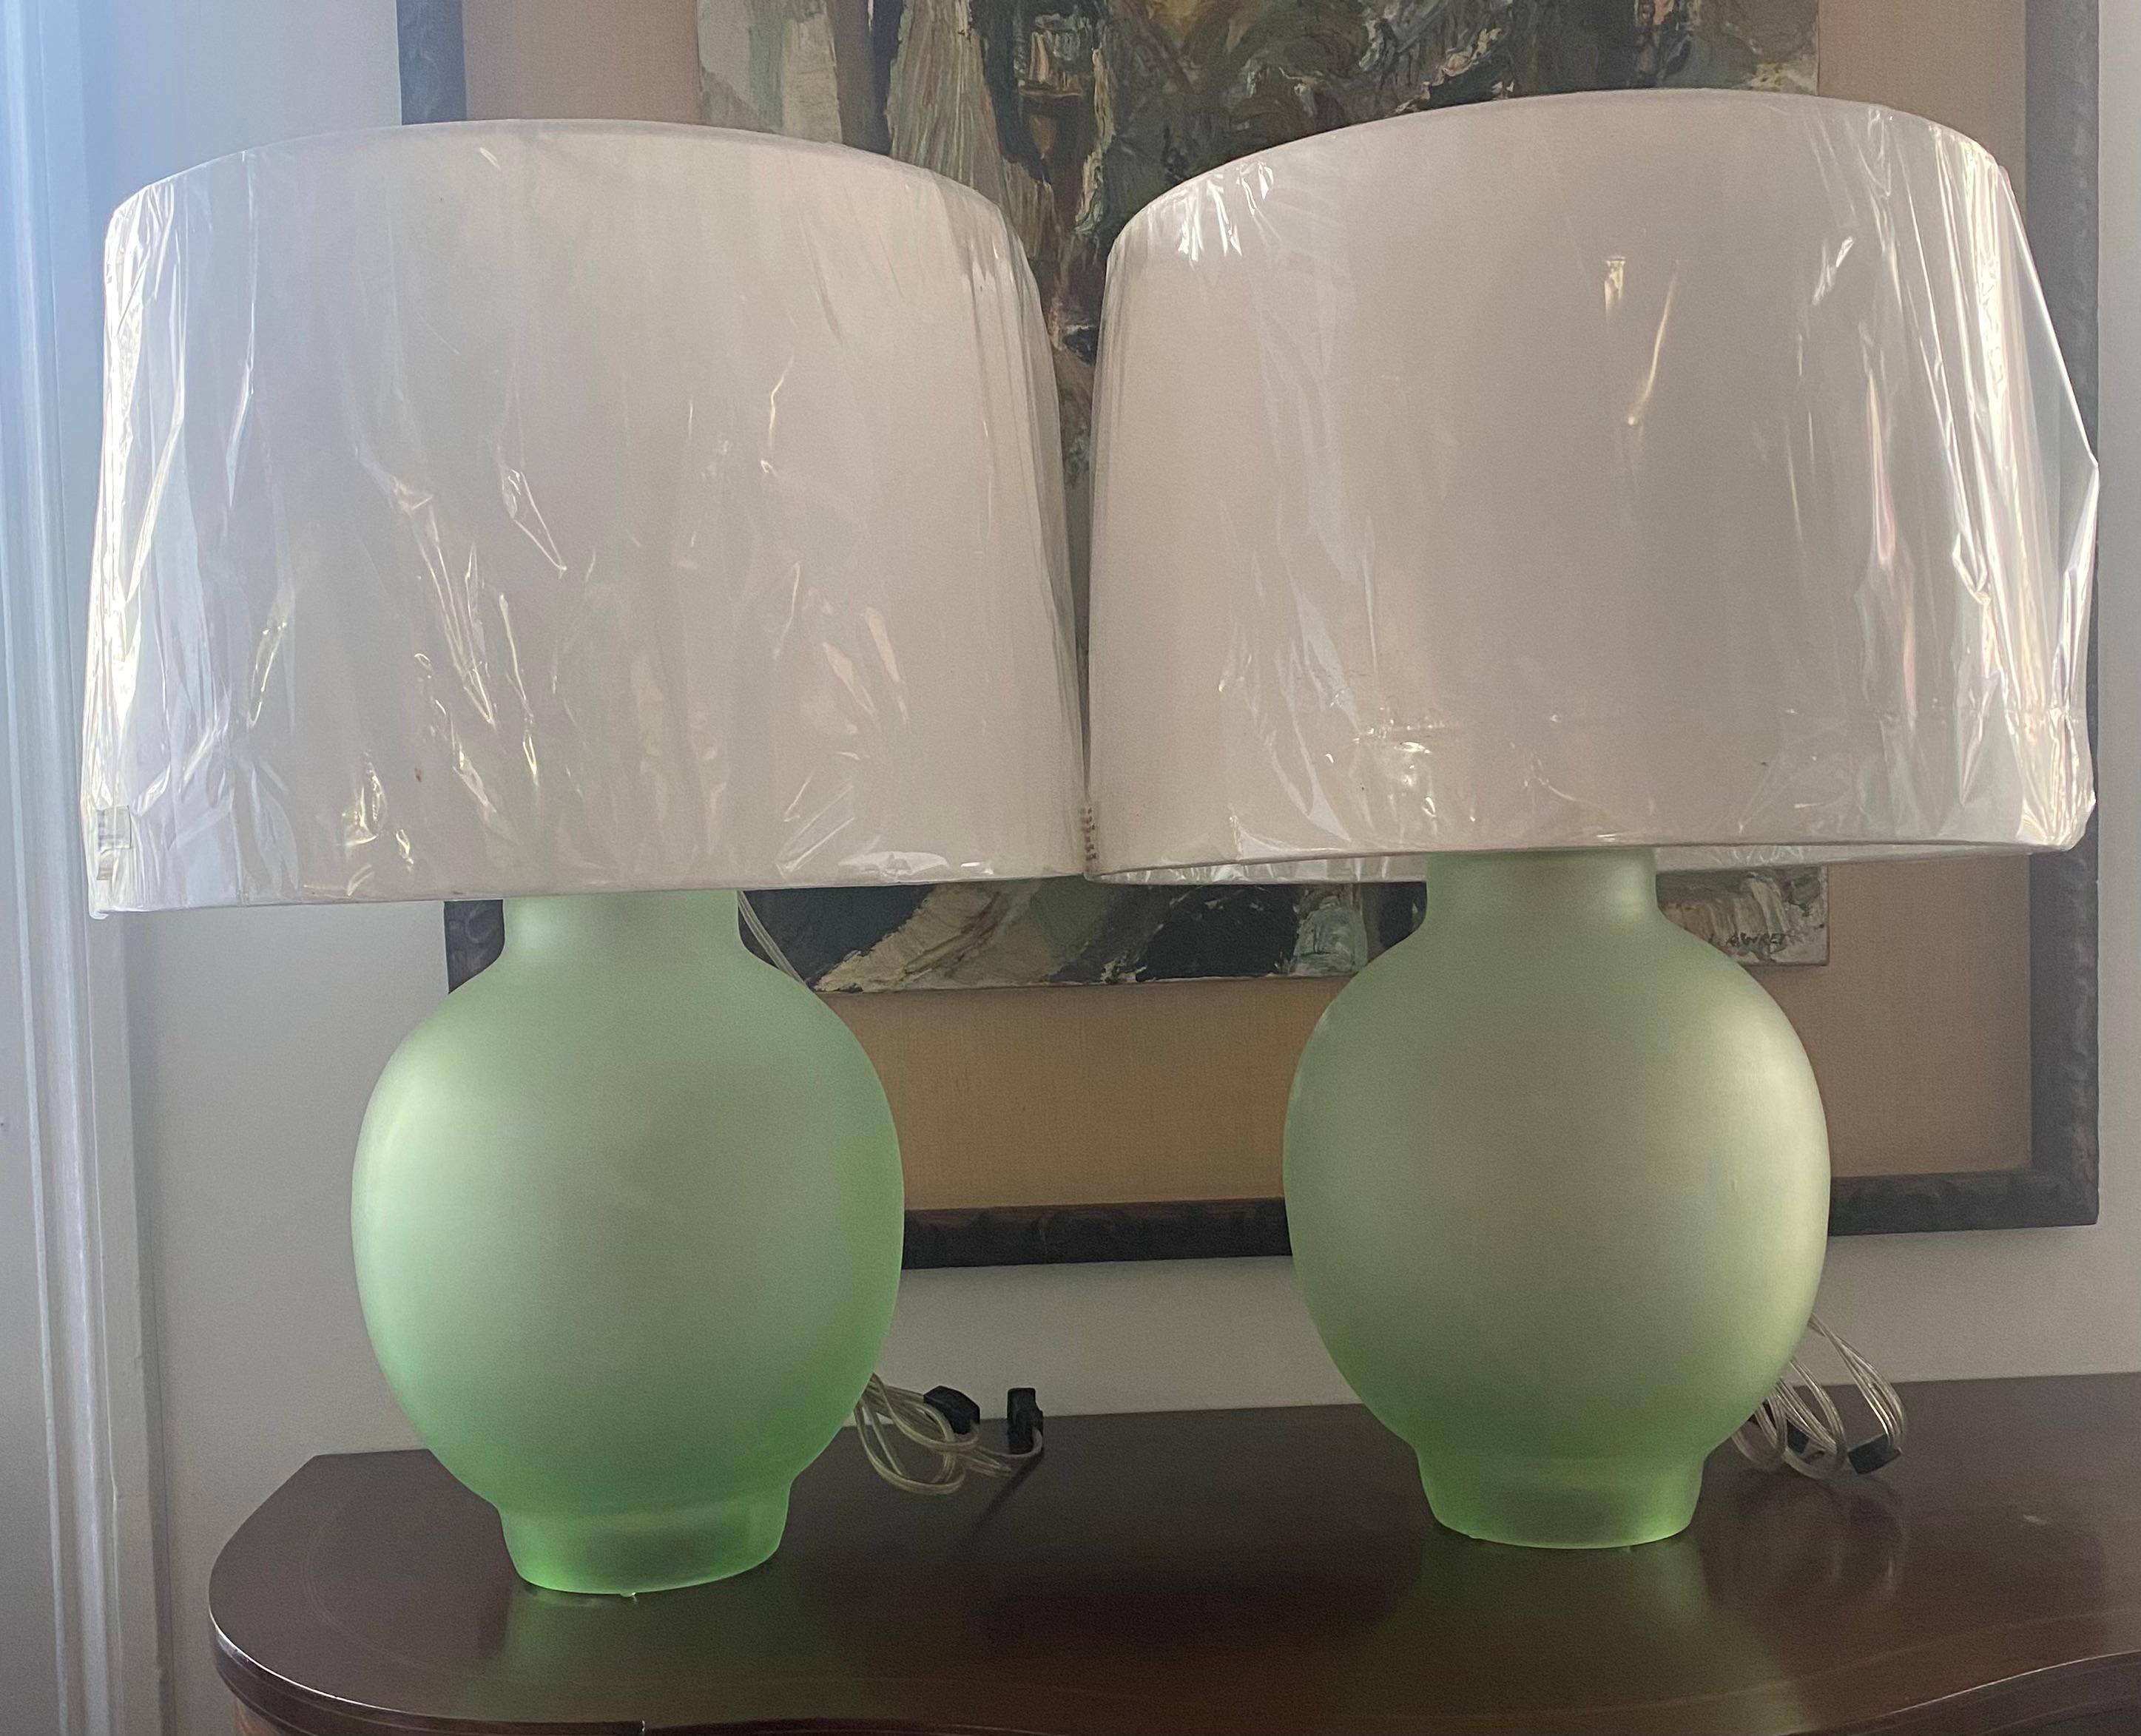 Erstaunlich Paar gefrostet grün Tischlampen - Glaskörper ist ca. 11 Zoll Durchmesser x 15 Zoll hoch plus 10-14 Zoll einstellbar Schatten Halter.
Schirme fotografiert messen ca. 18 Zoll Durchmesser x 13 Zoll hoch.
Schirme können mitgeliefert werden,